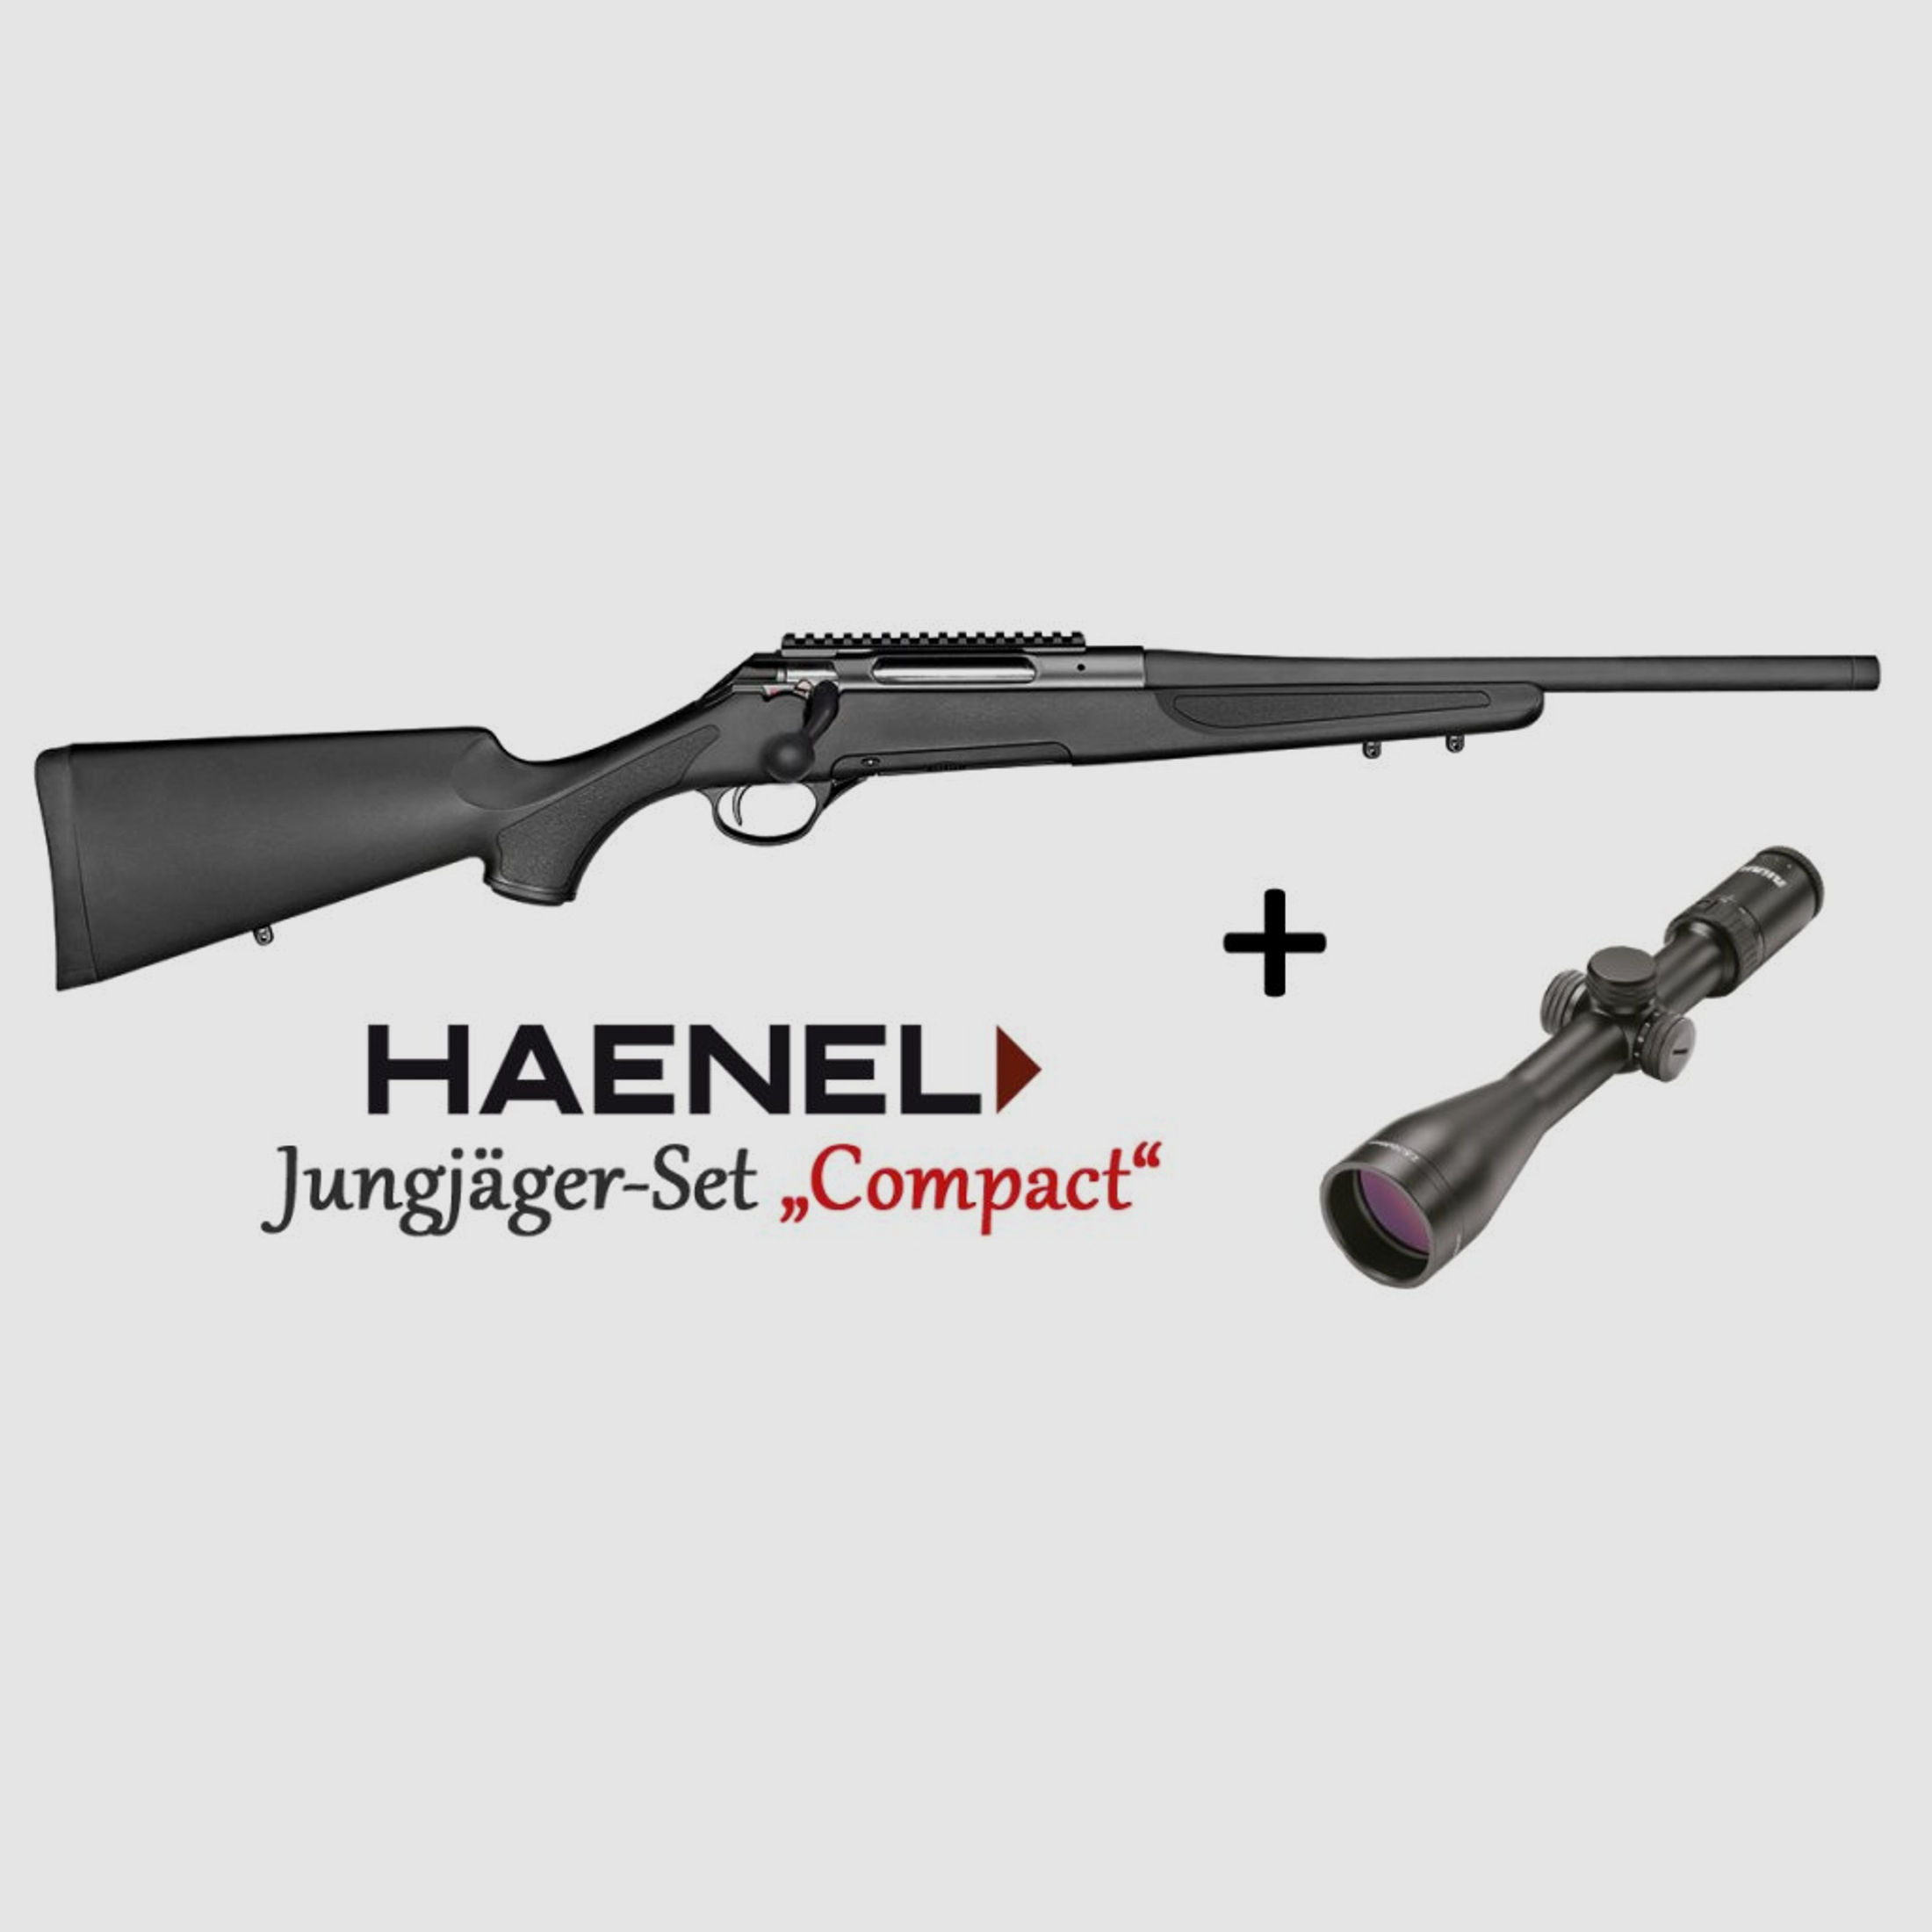 HAENEL Jungjäger-Set Compact